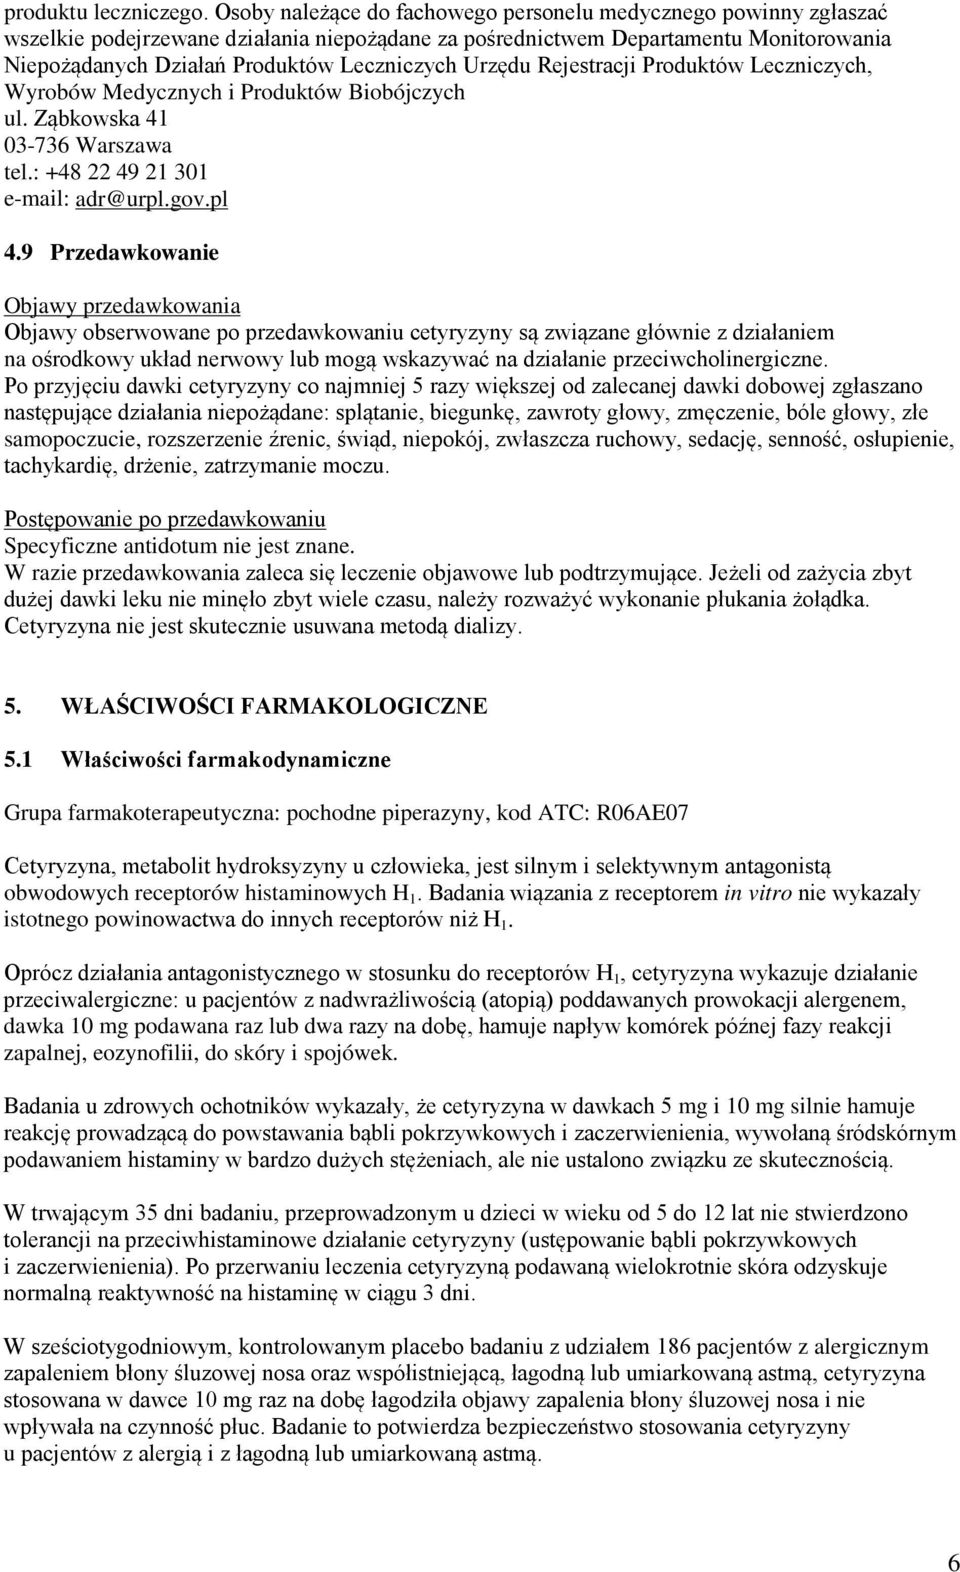 Urzędu Rejestracji Produktów Leczniczych, Wyrobów Medycznych i Produktów Biobójczych ul. Ząbkowska 41 03-736 Warszawa tel.: +48 22 49 21 301 e-mail: adr@urpl.gov.pl 4.